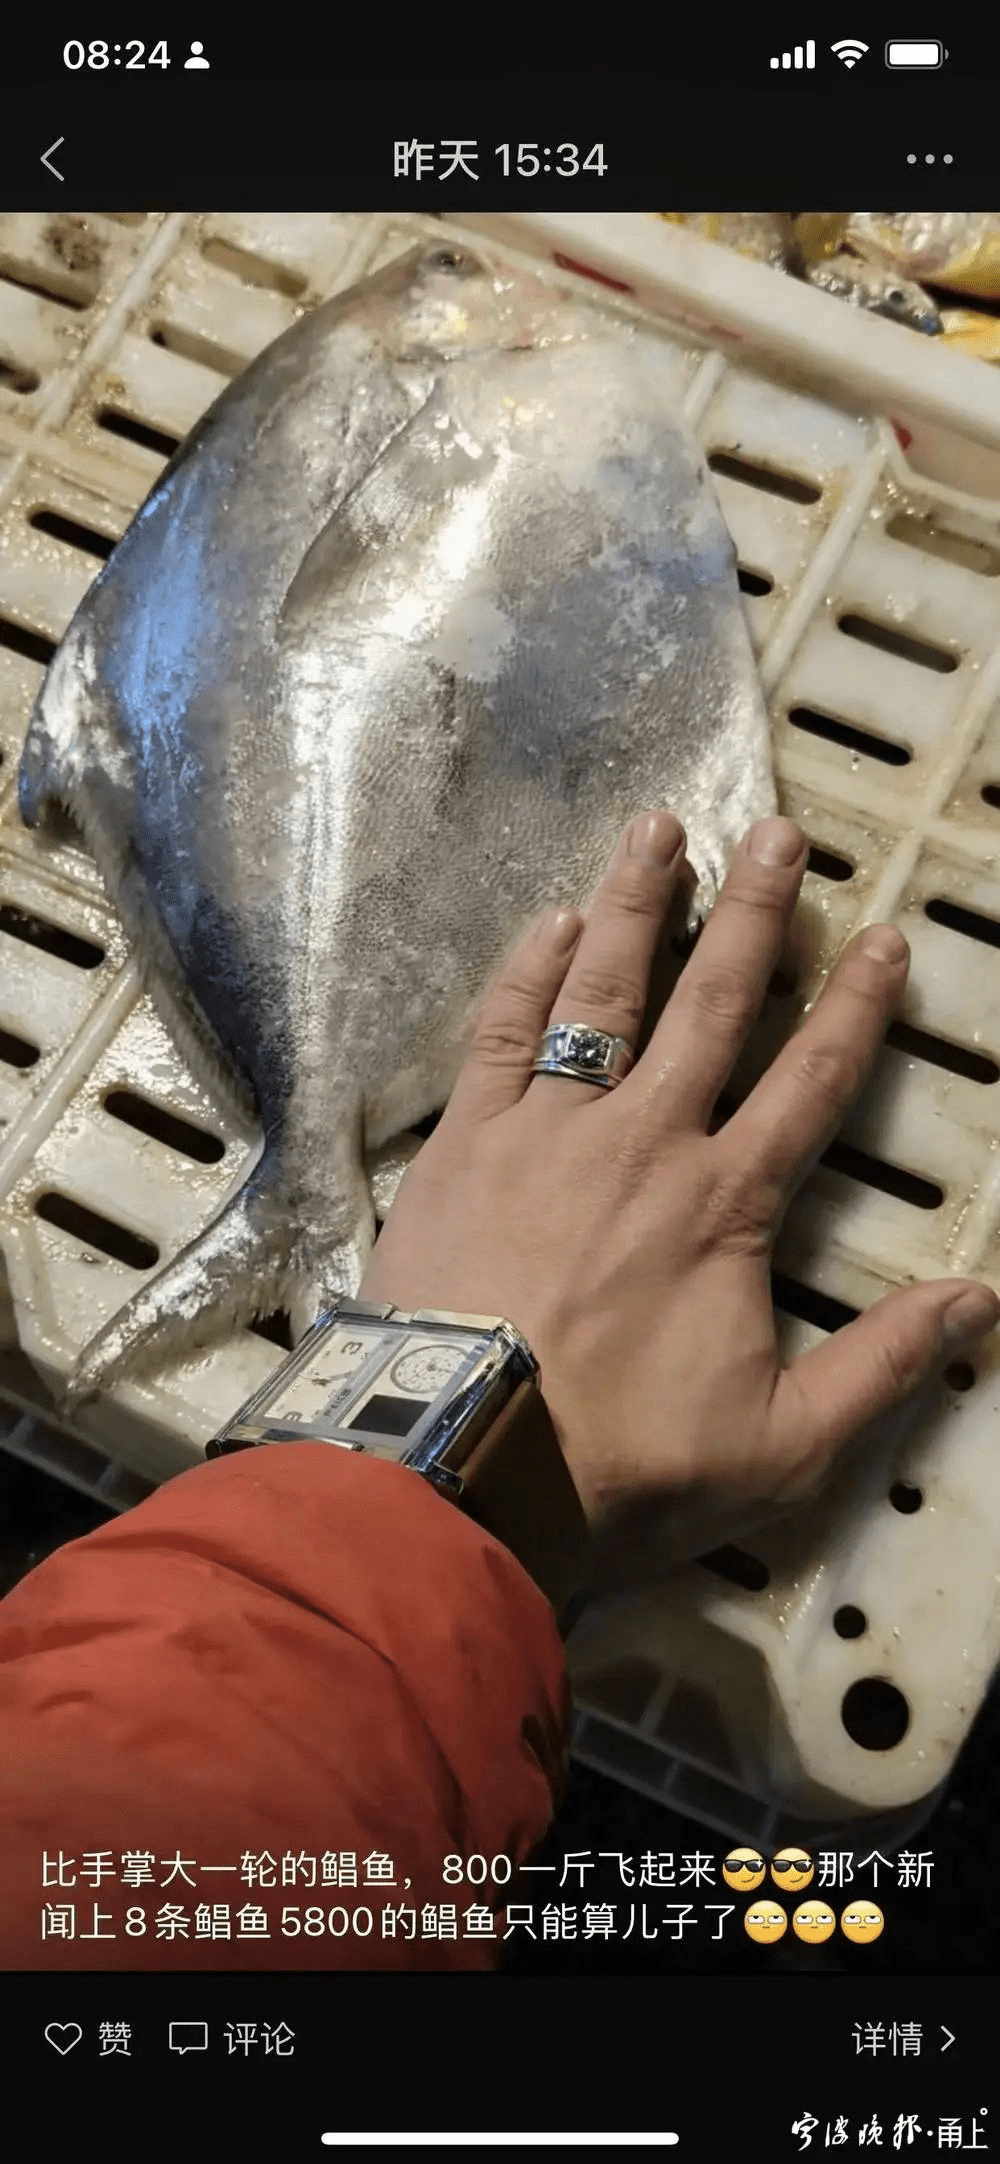 比手掌一般大的银䱽鱼，人民币1600元一公斤，非常夸张。